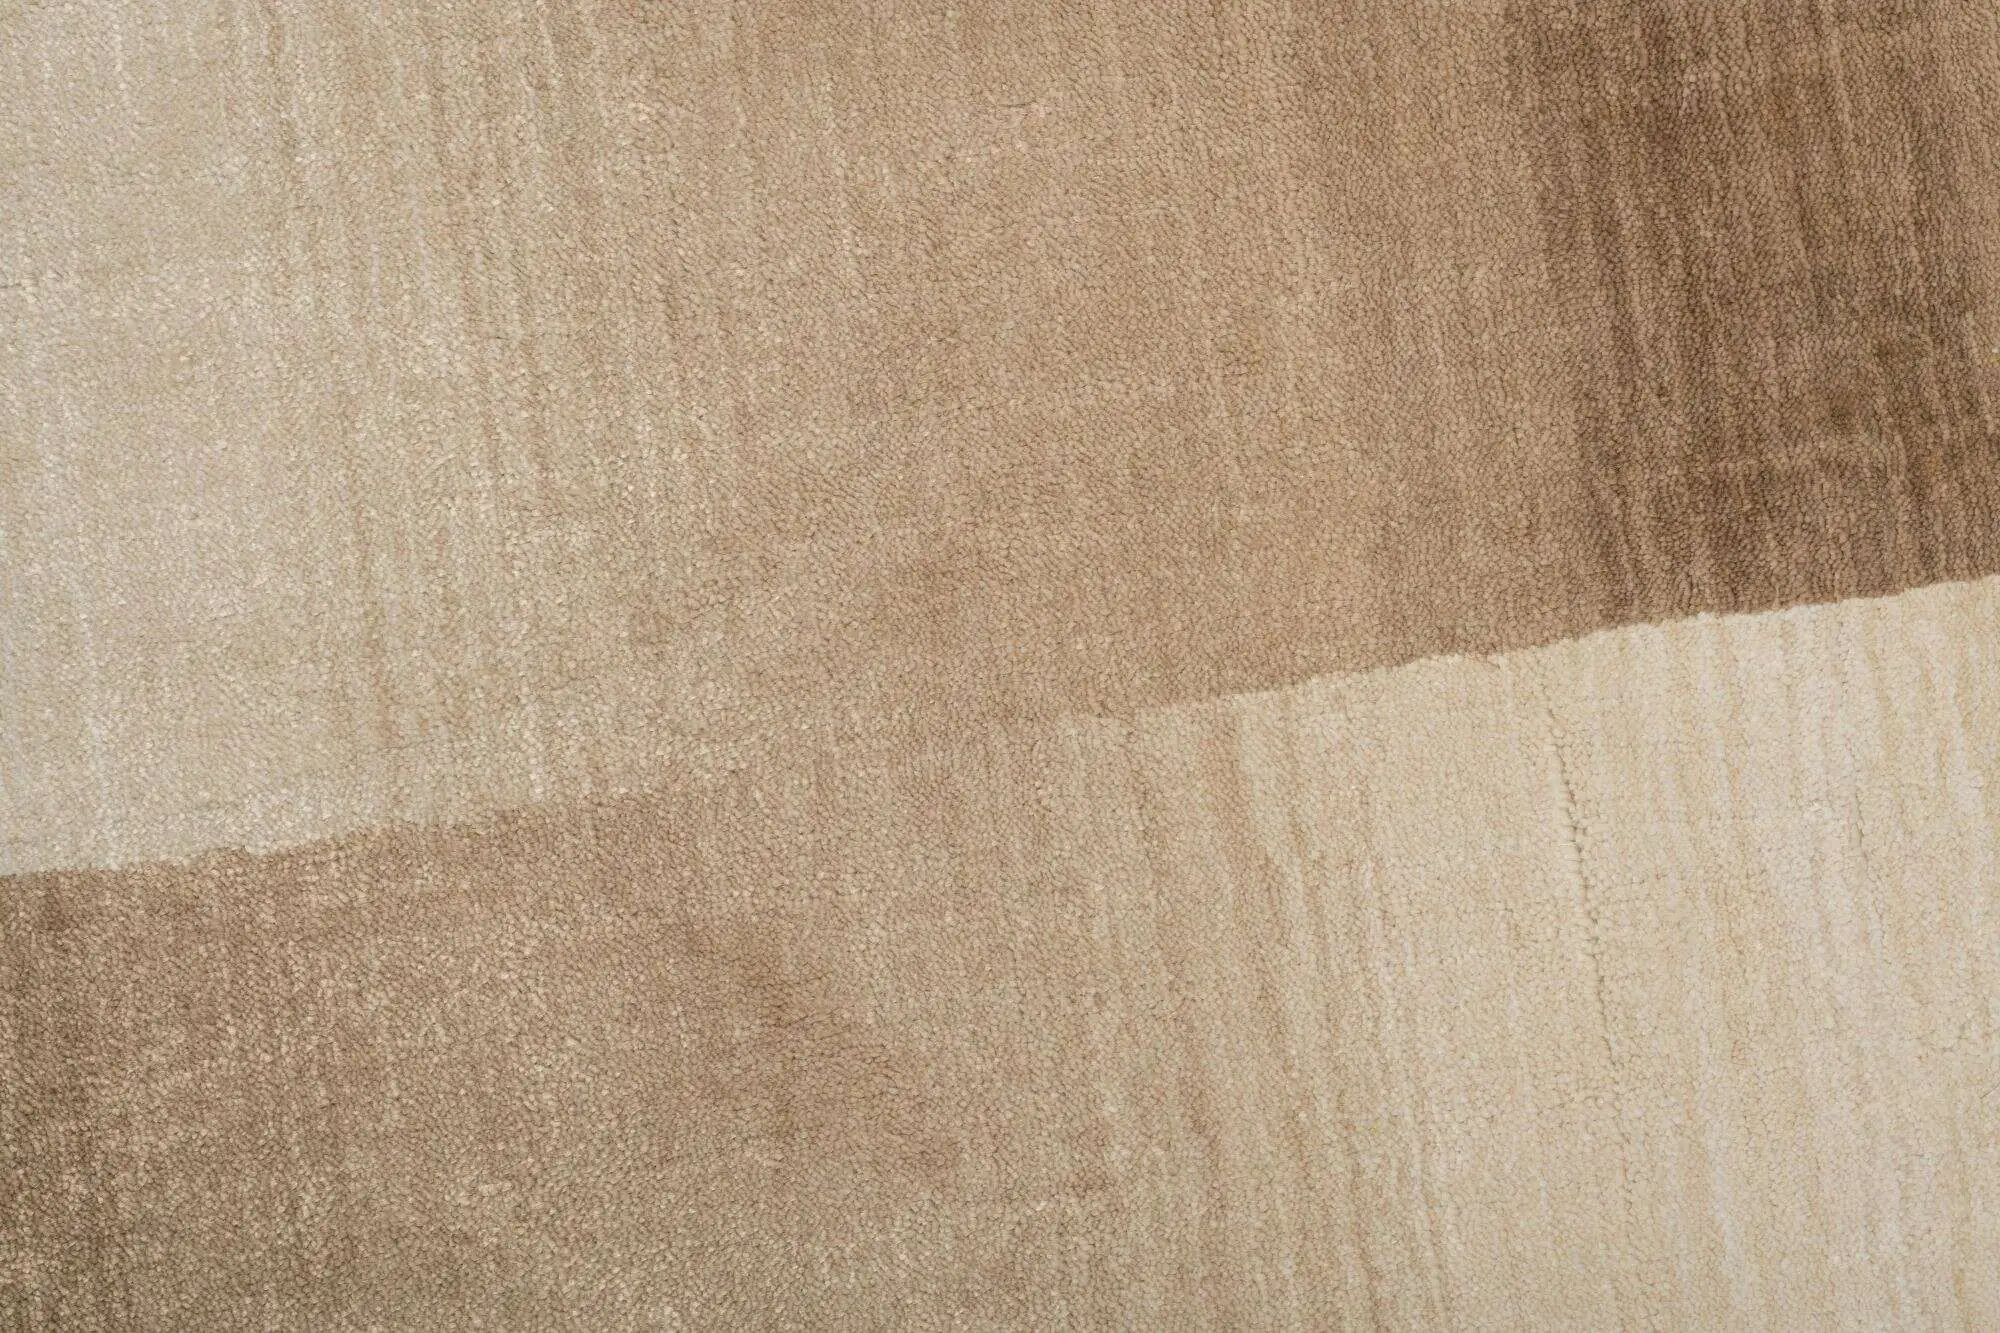 Teppich Modern 160x230cm Palmyra Handgearbeitet Viskose beige